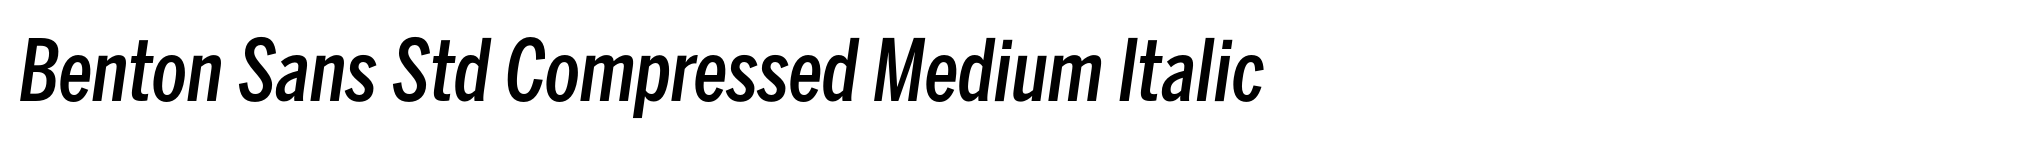 Benton Sans Std Compressed Medium Italic image